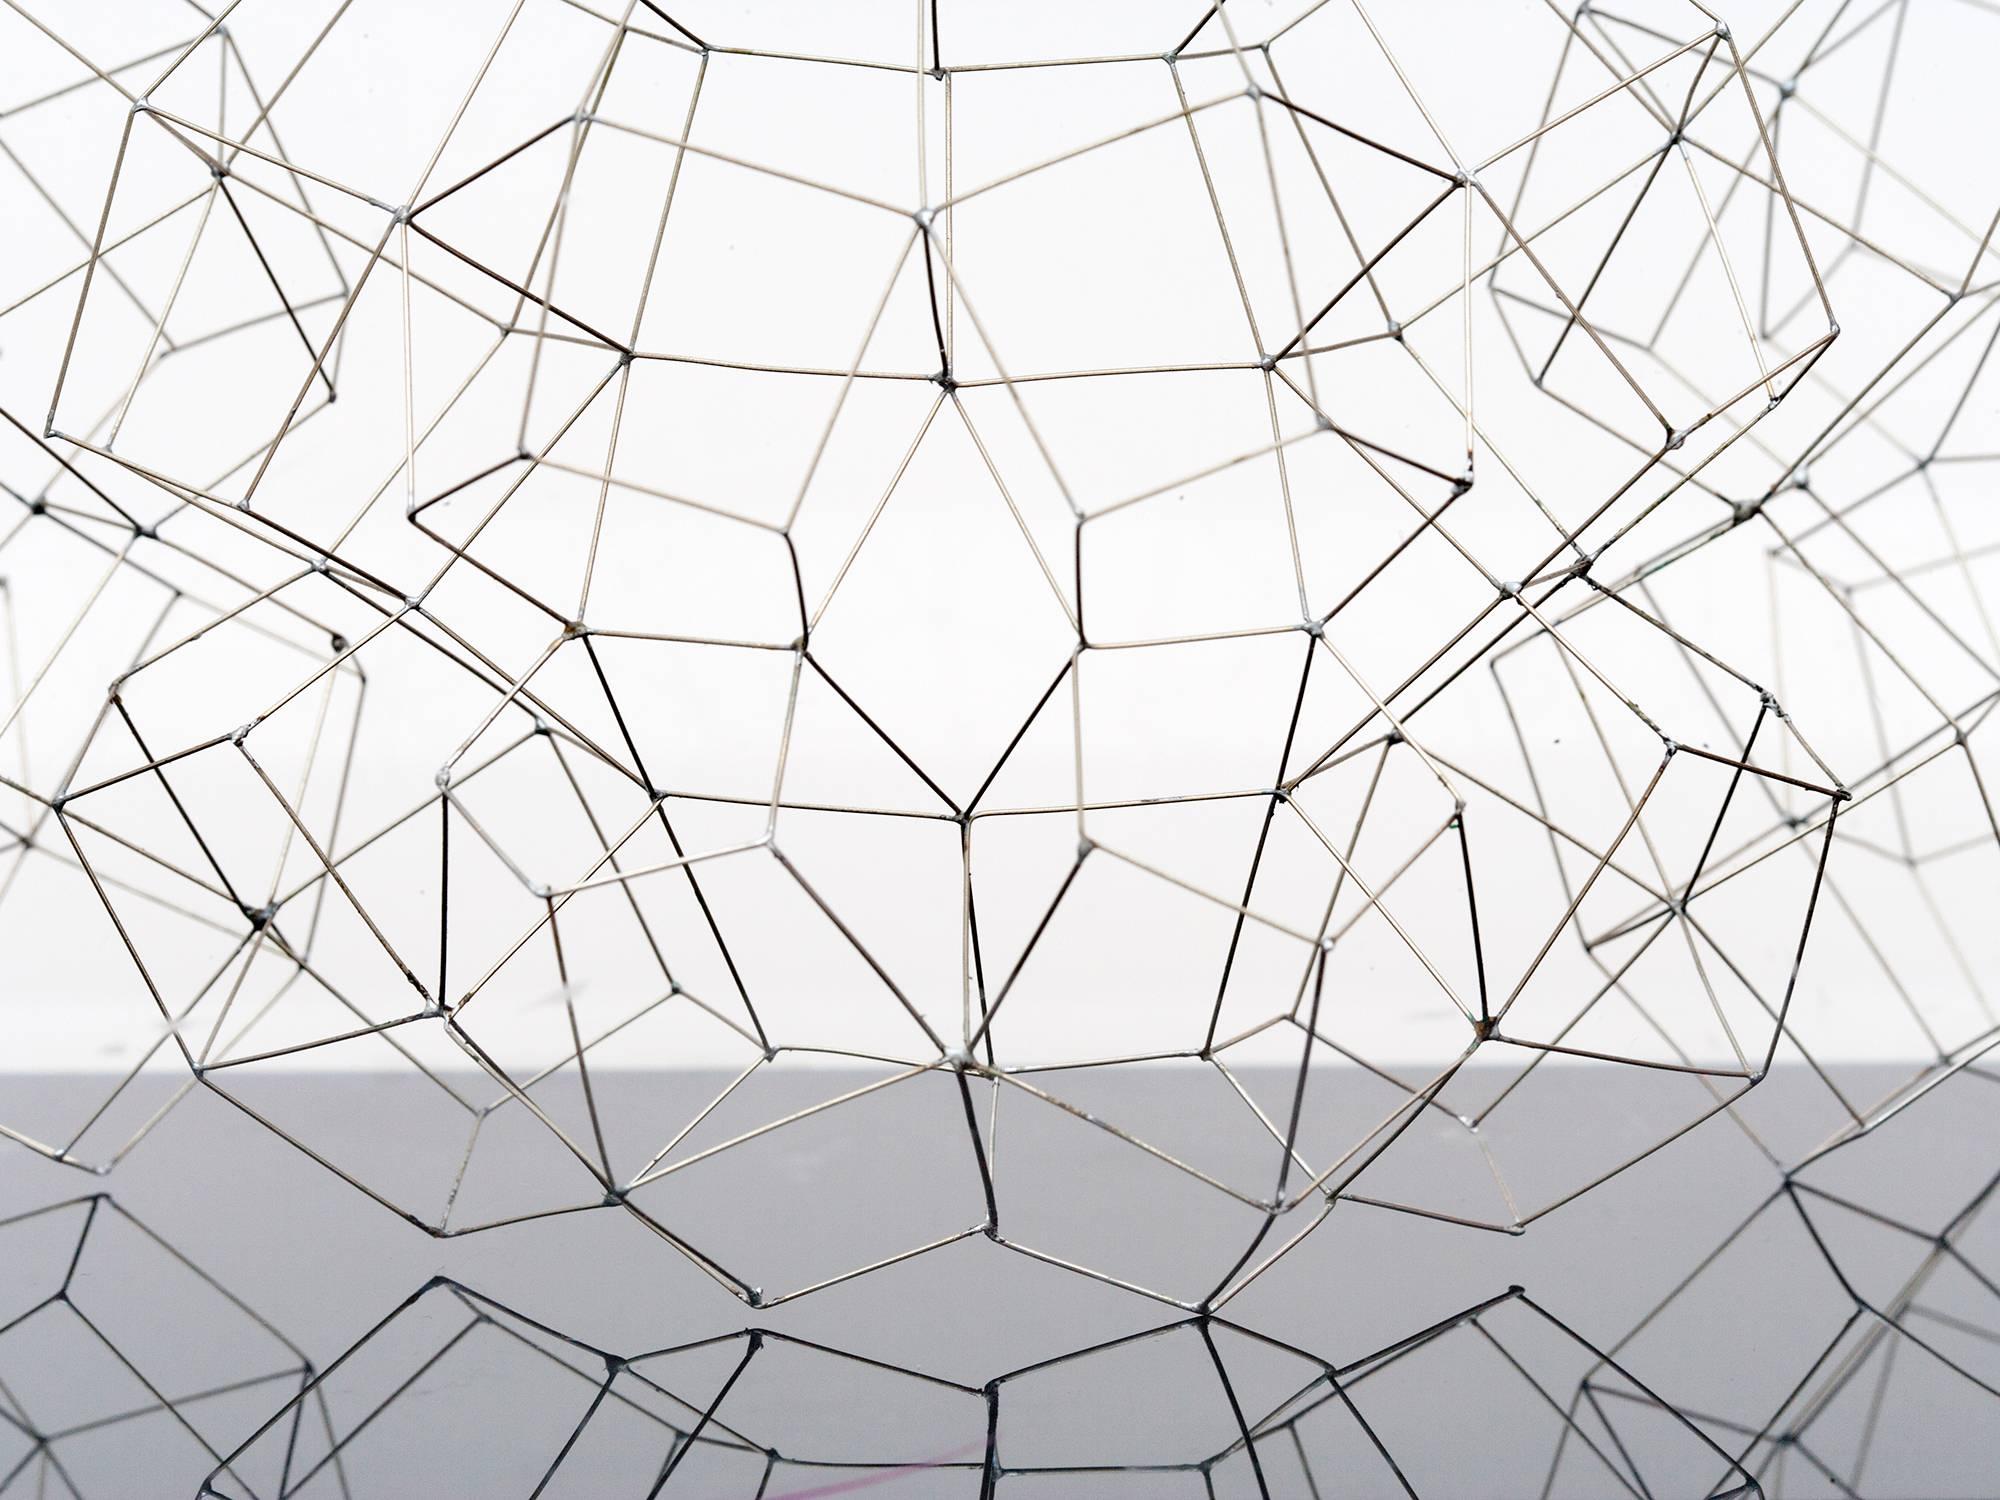 American Wire Tabletop Sculpture by Marilynn Gelfman-Karp